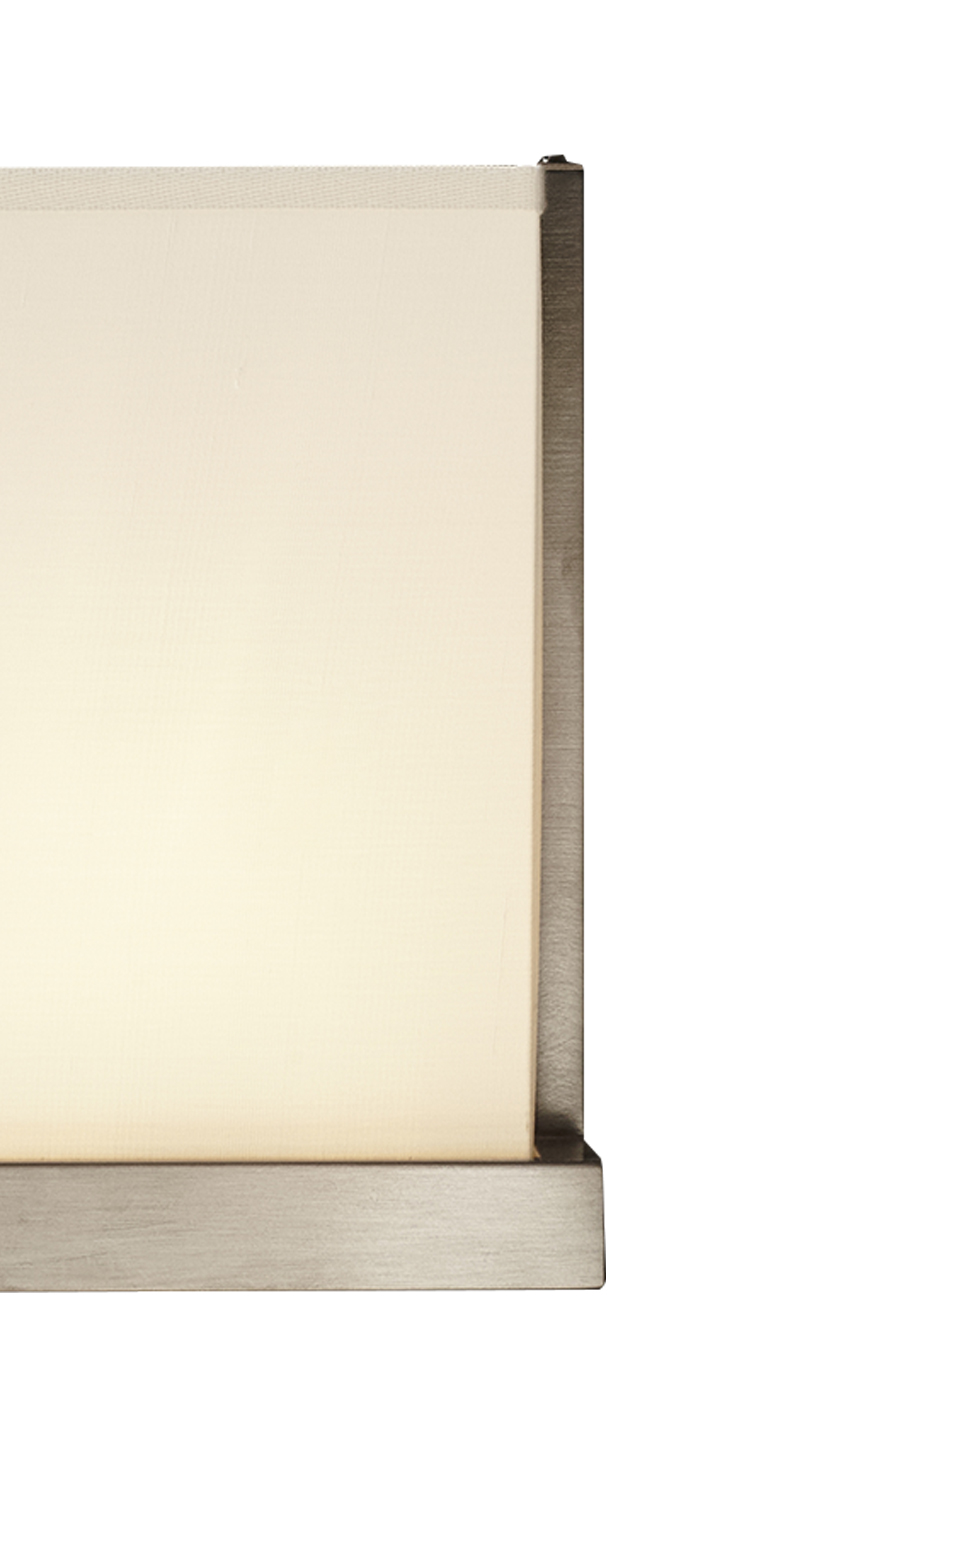 Colette — настенная светодиодная лампа из бронзы, никеля или хрома, с абажуром изо льна, хлопка или окантованного вручную шелка из каталога Promemoria | Promemoria